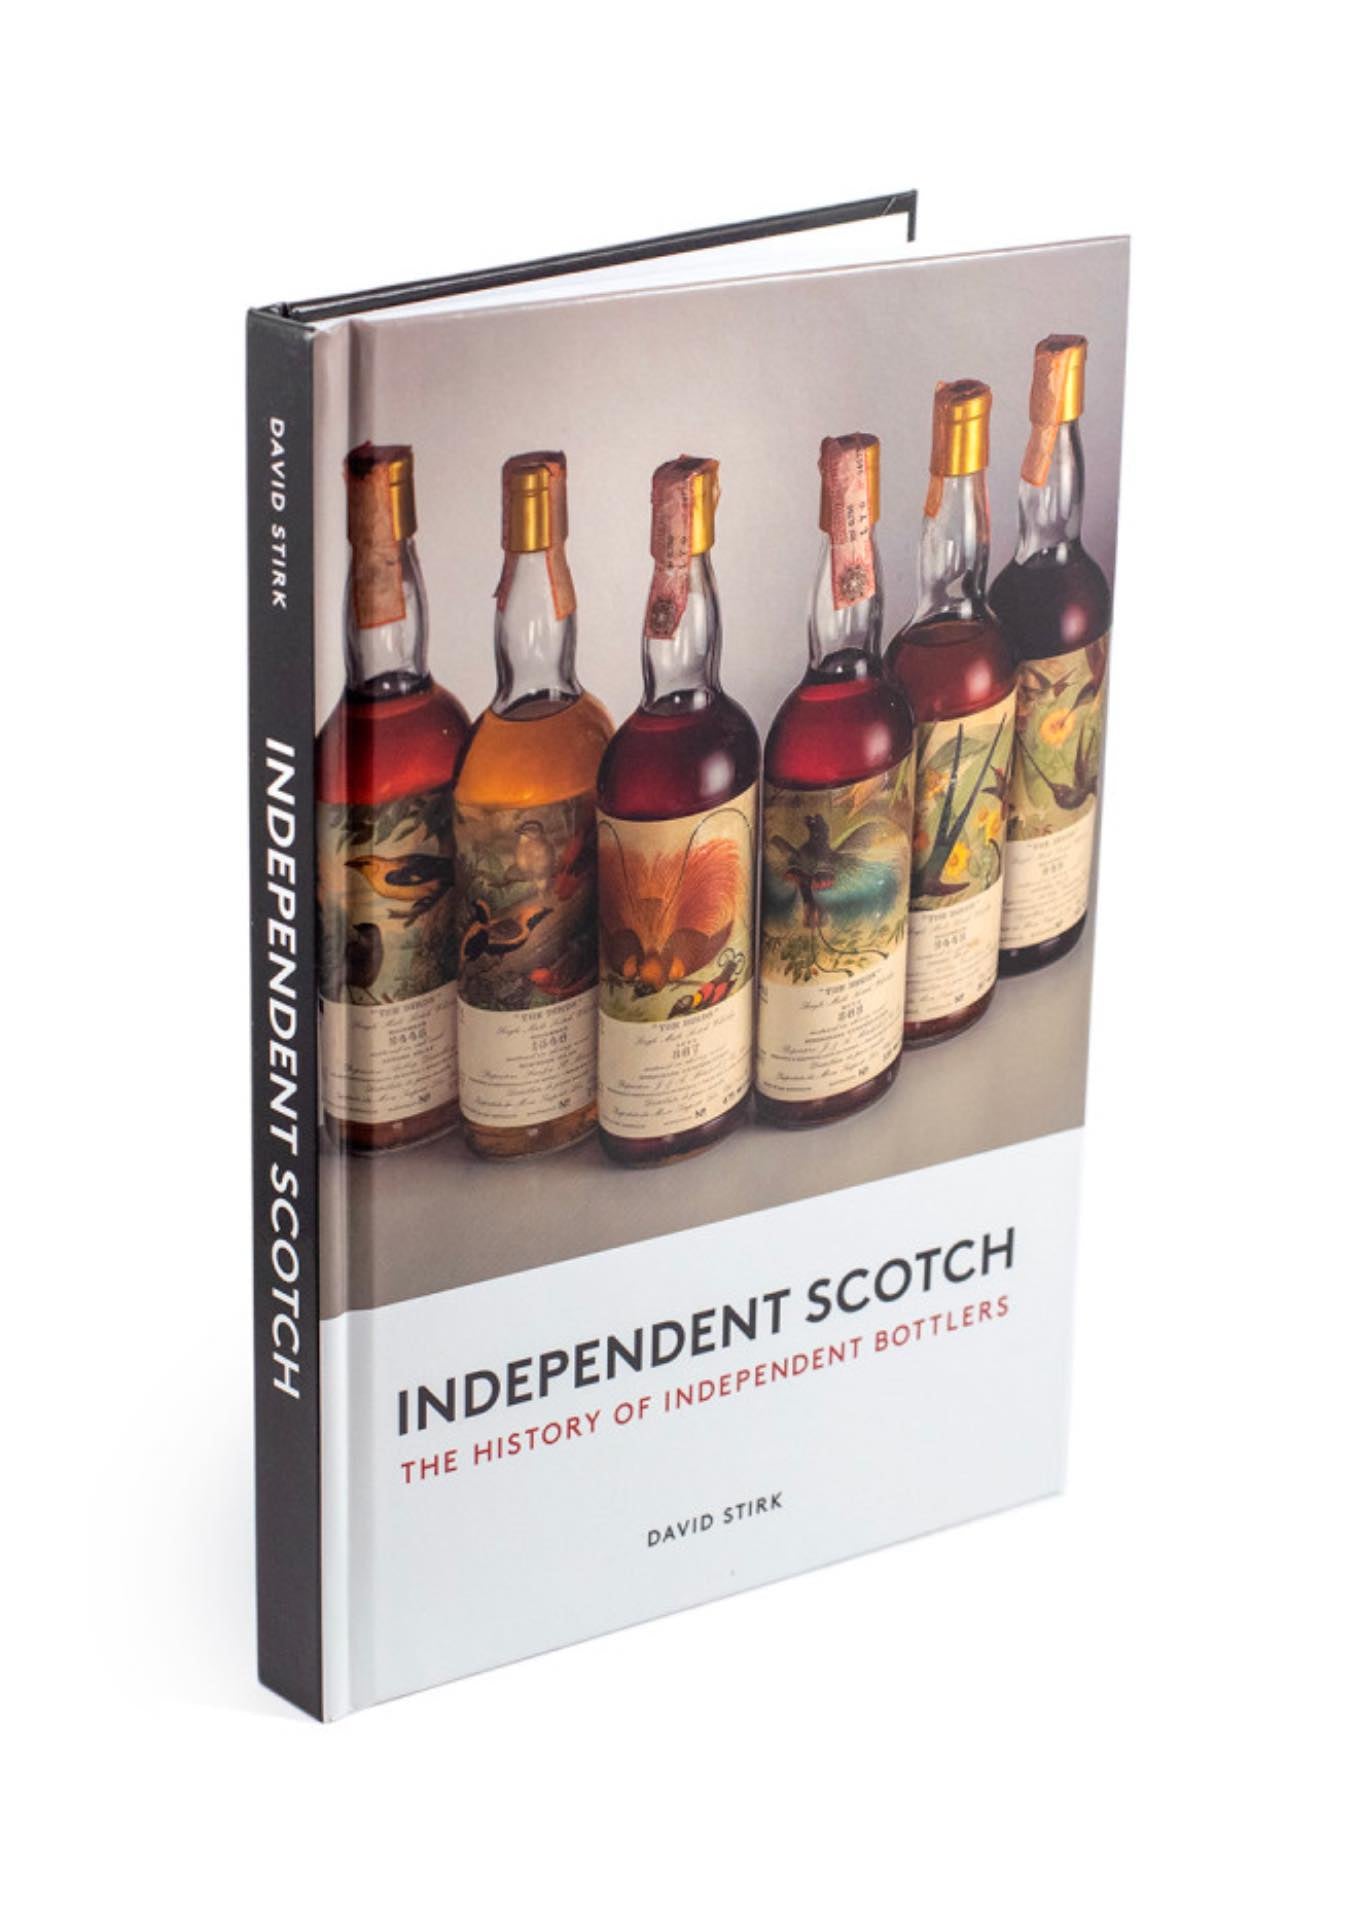 Independent Scotch, Geschichte unabhängiger Abfüller, von David Stirk